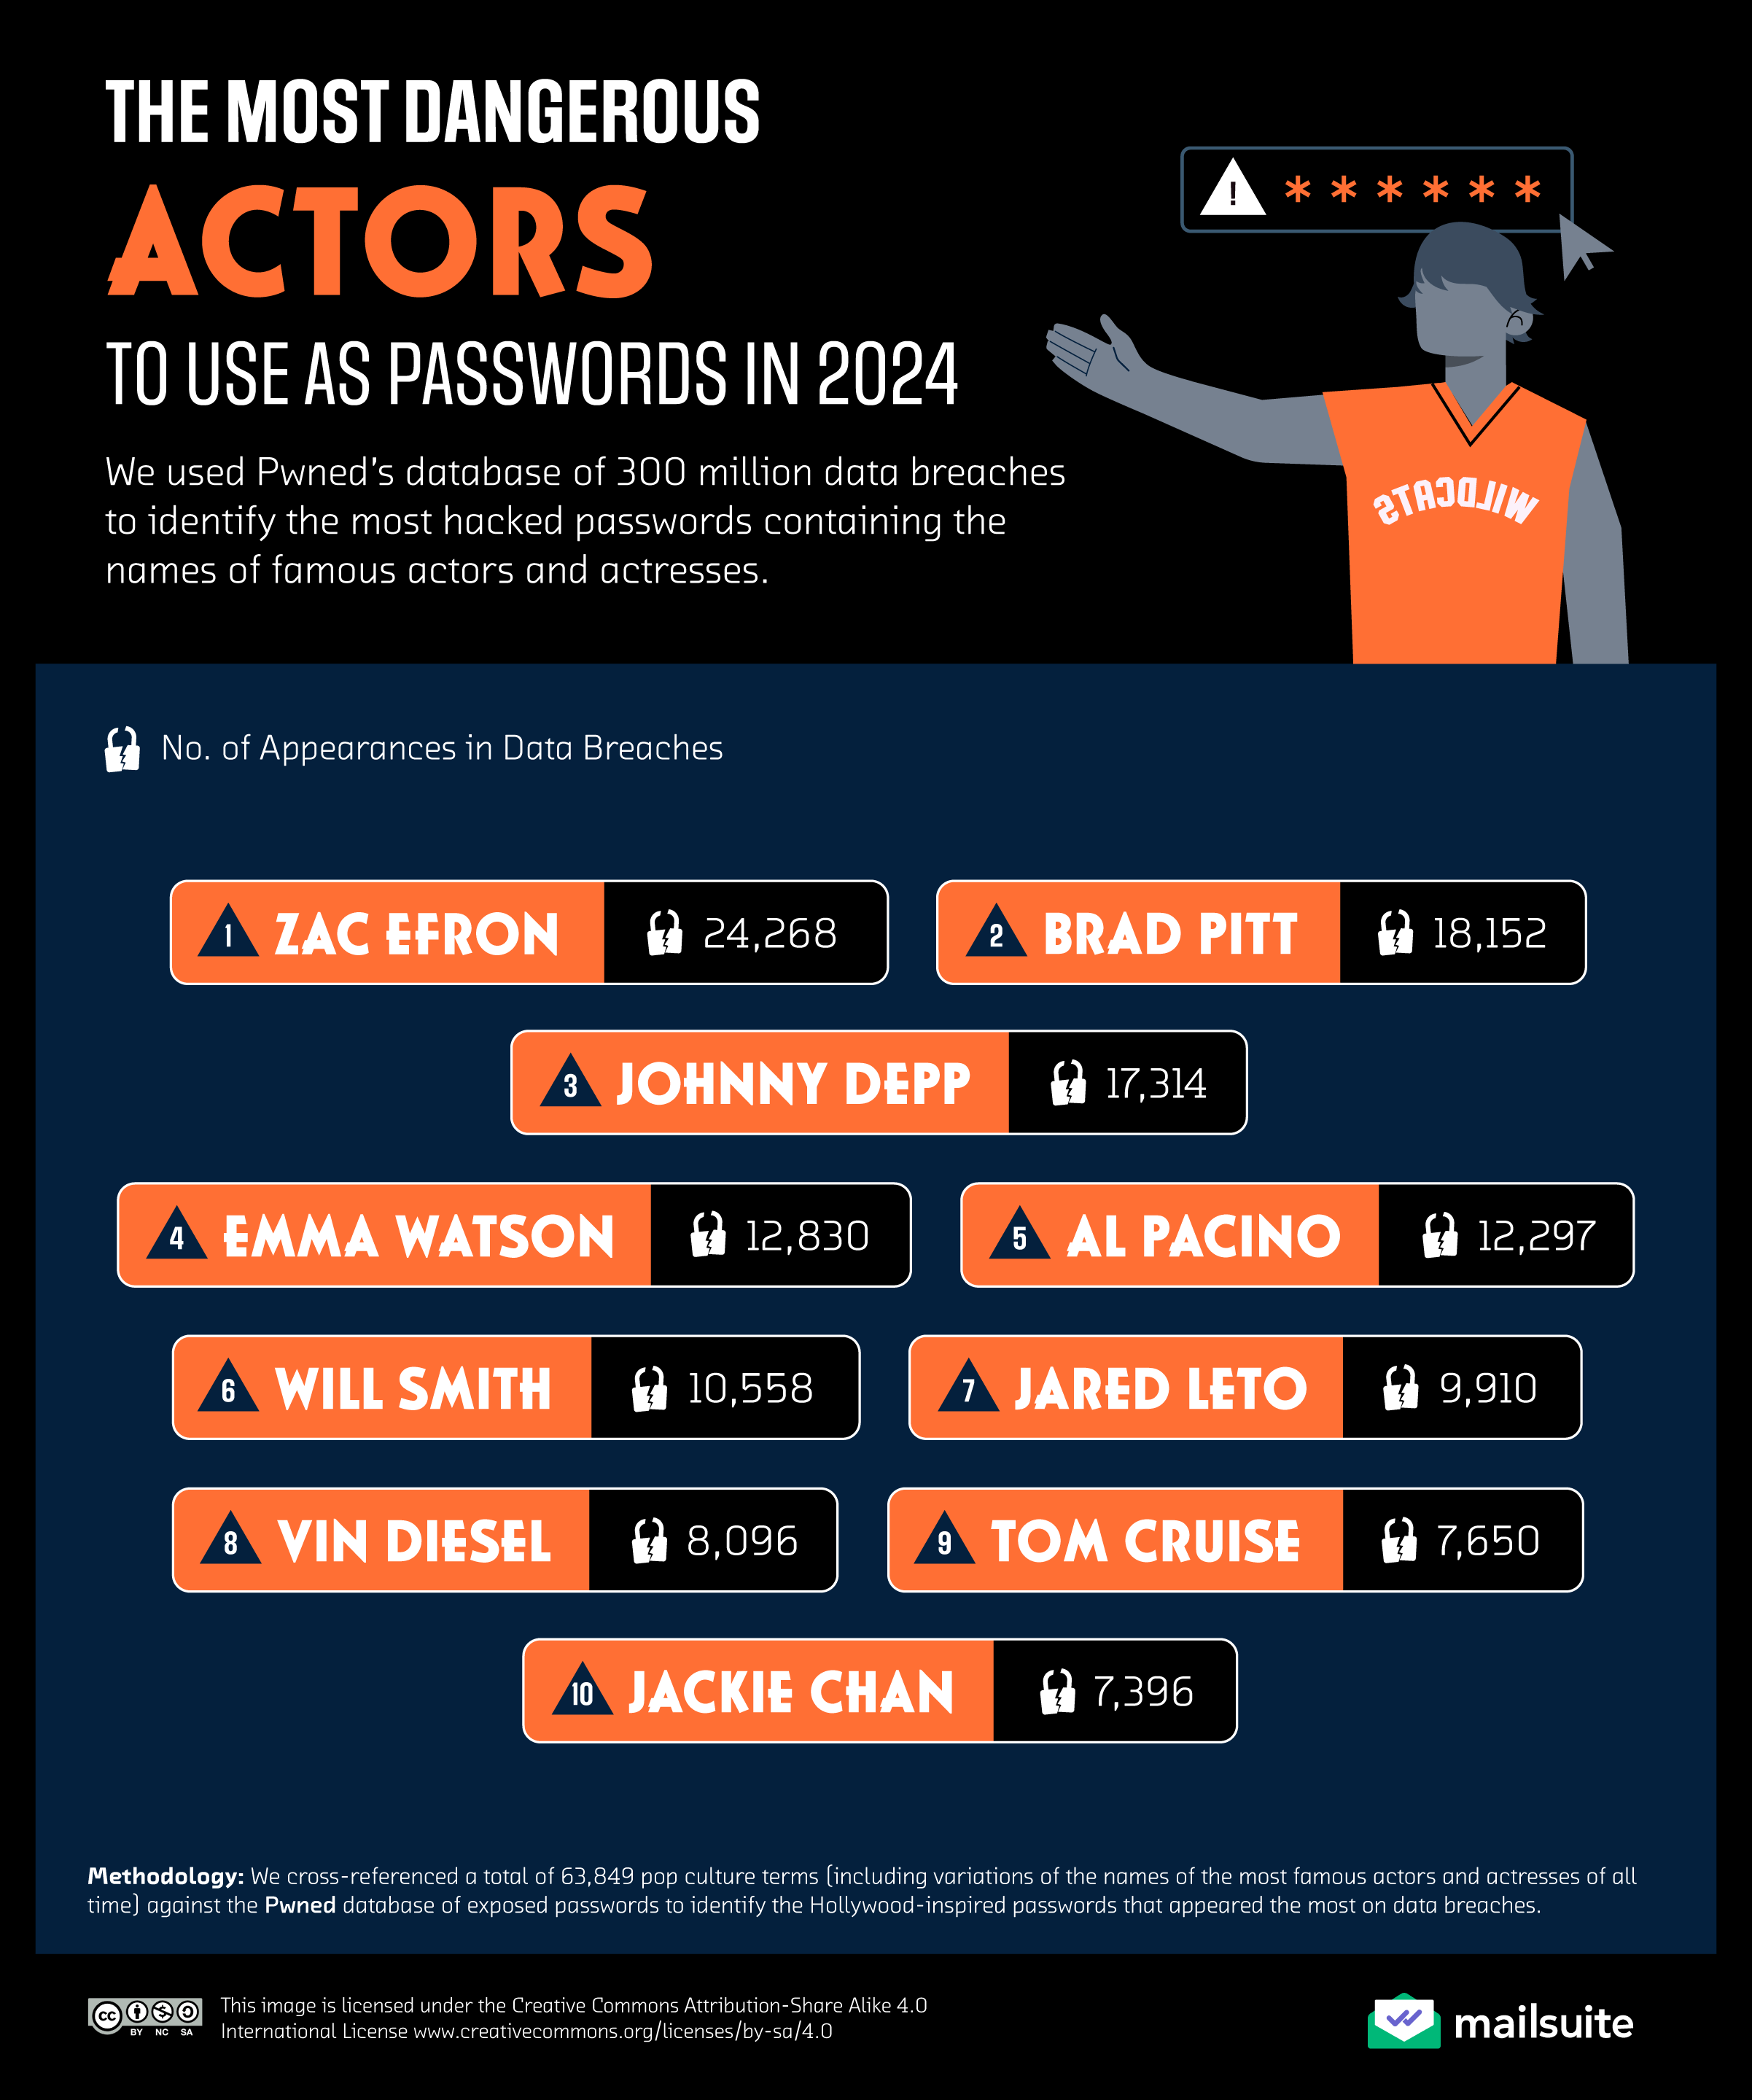 Lista nomes de atores usados como senhas mais perigosas na internet